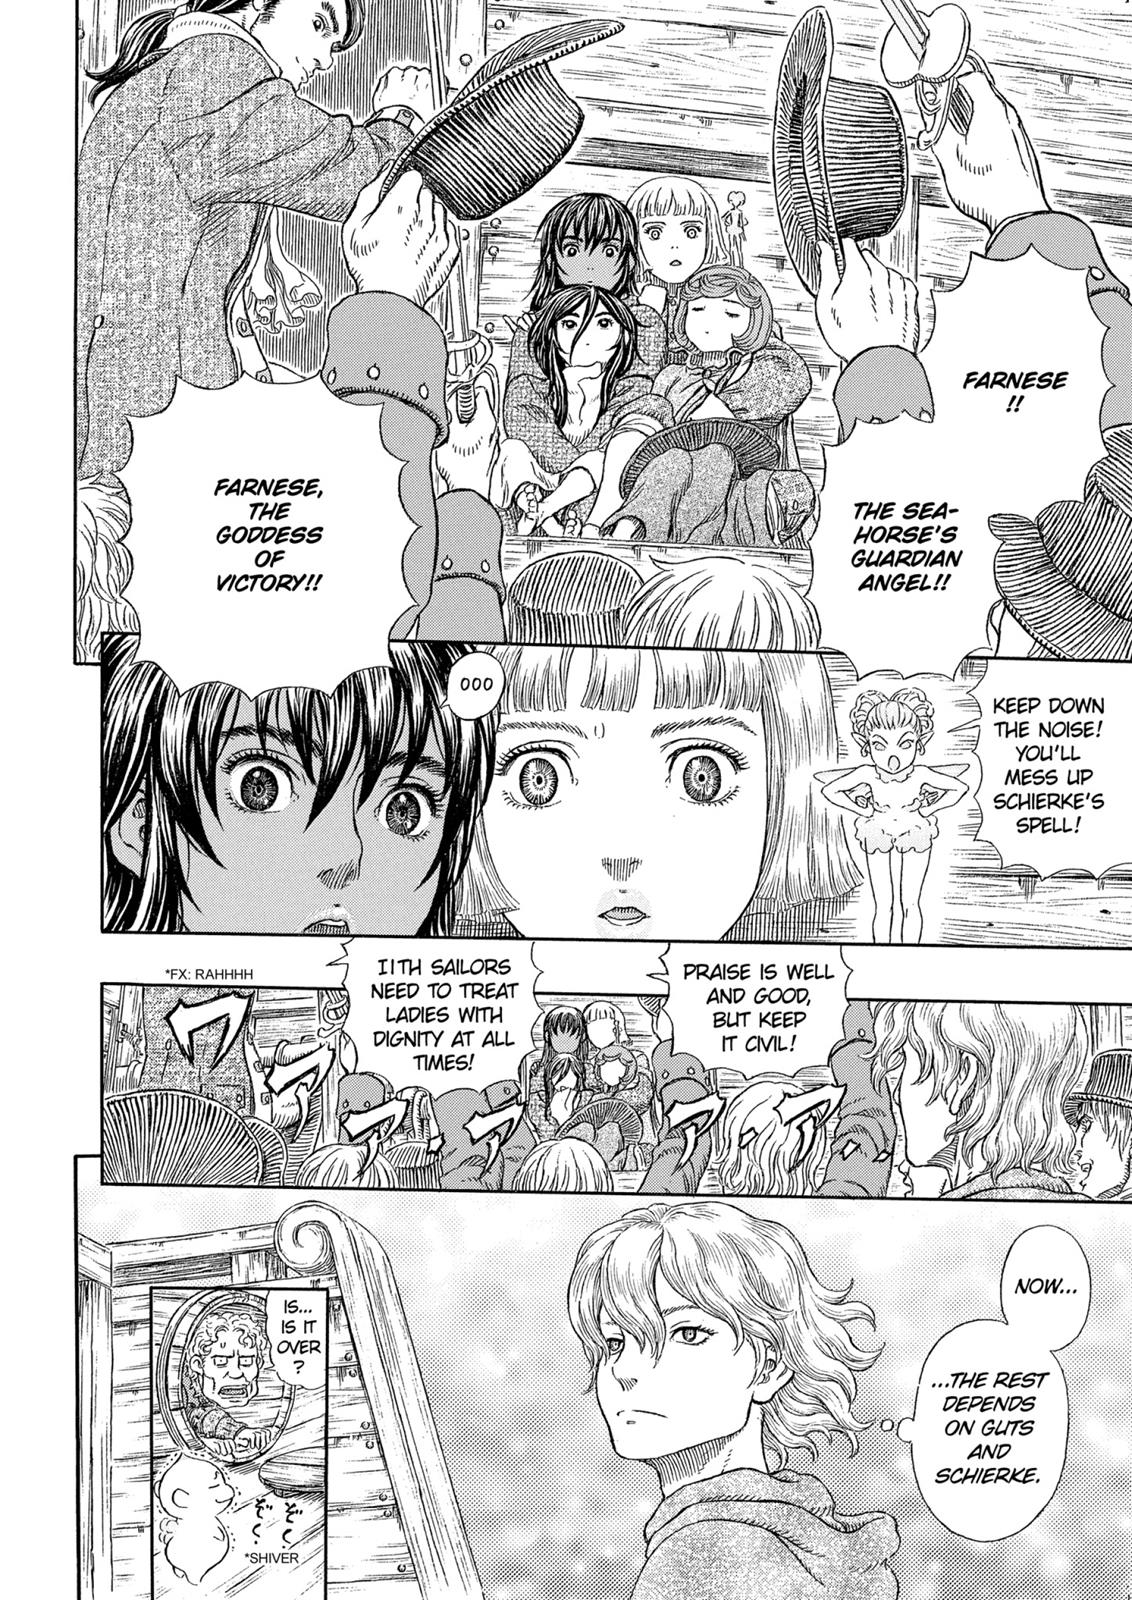 Berserk Manga Chapter 322 image 11